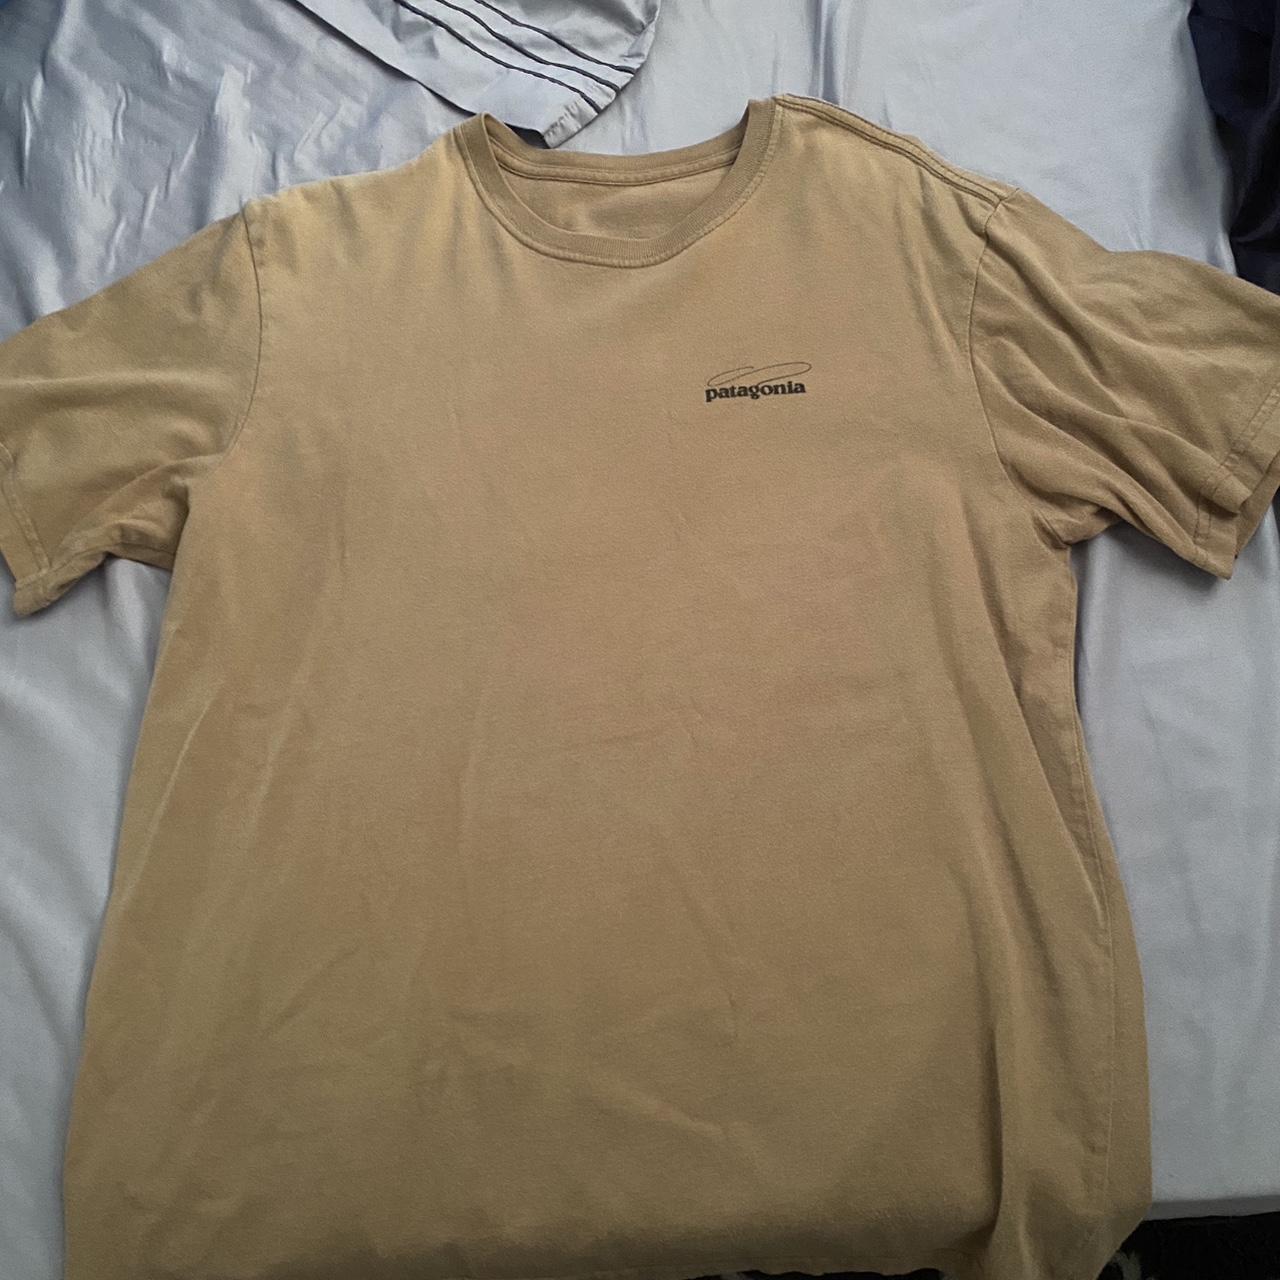 Size medium Patagonia shirt - Depop